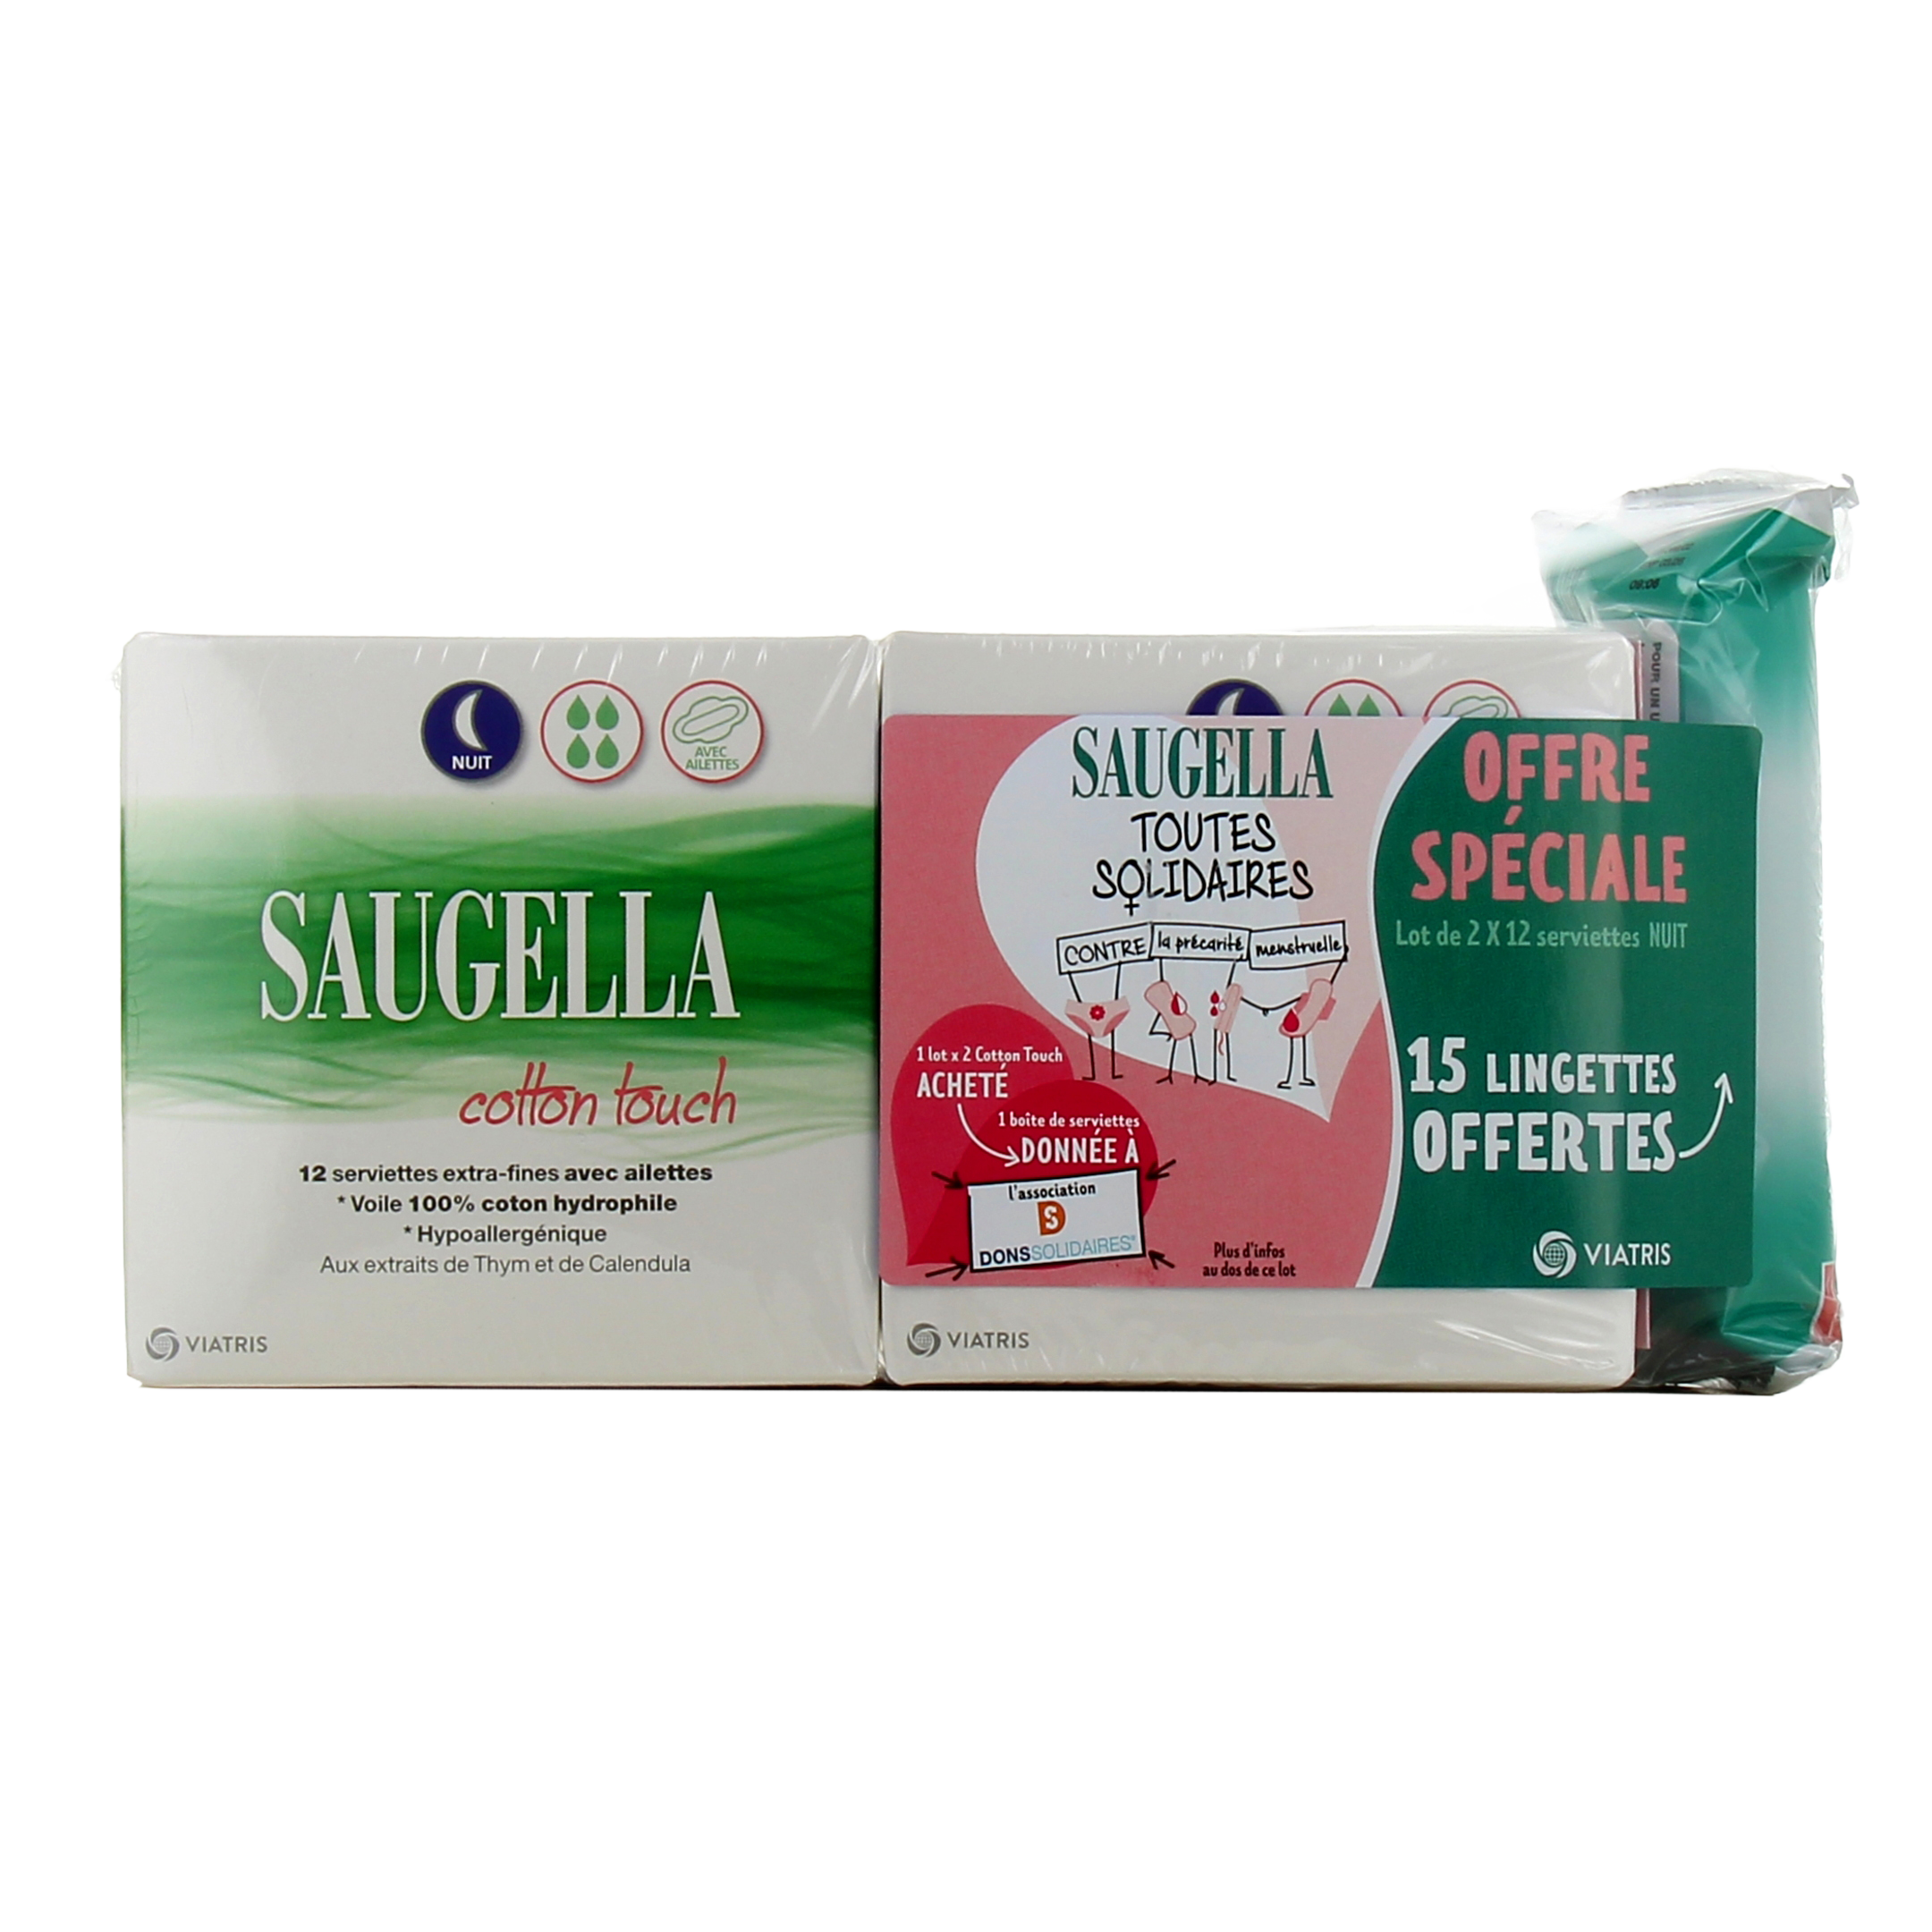 Saugella Cotton Touch Serviettes Maternité x10 - Paraphamadirect